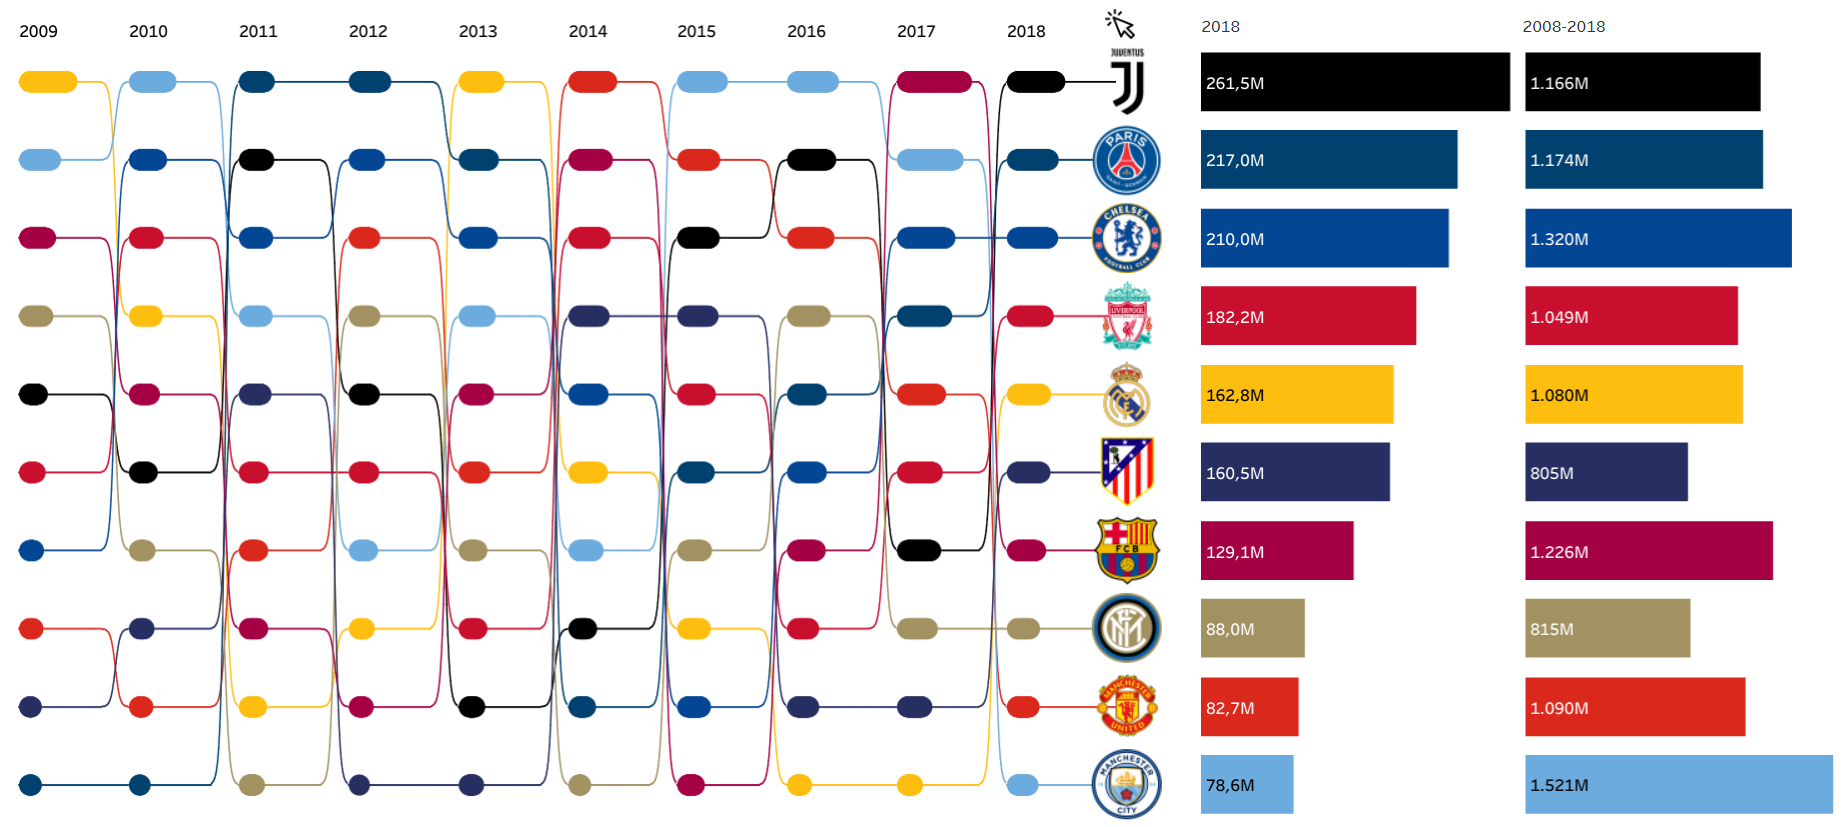 Quanto os time de futebol europeus gastam com seus jogadores?